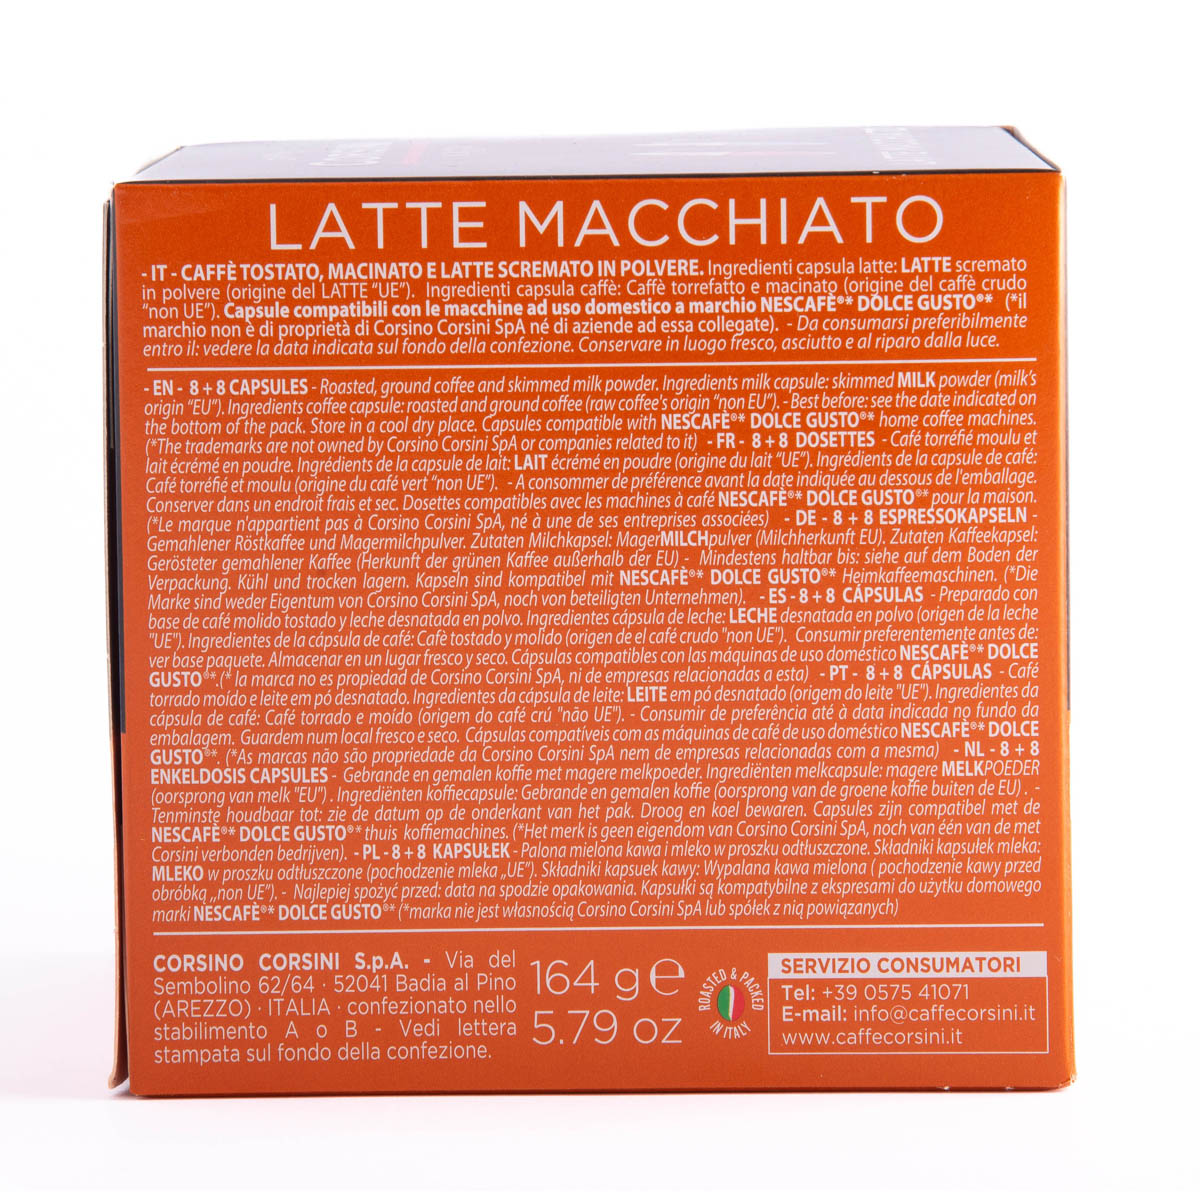 Capsule compatibili Nescafè® Dolce Gusto® | Latte macchiato | 16 (8+8) pezzi